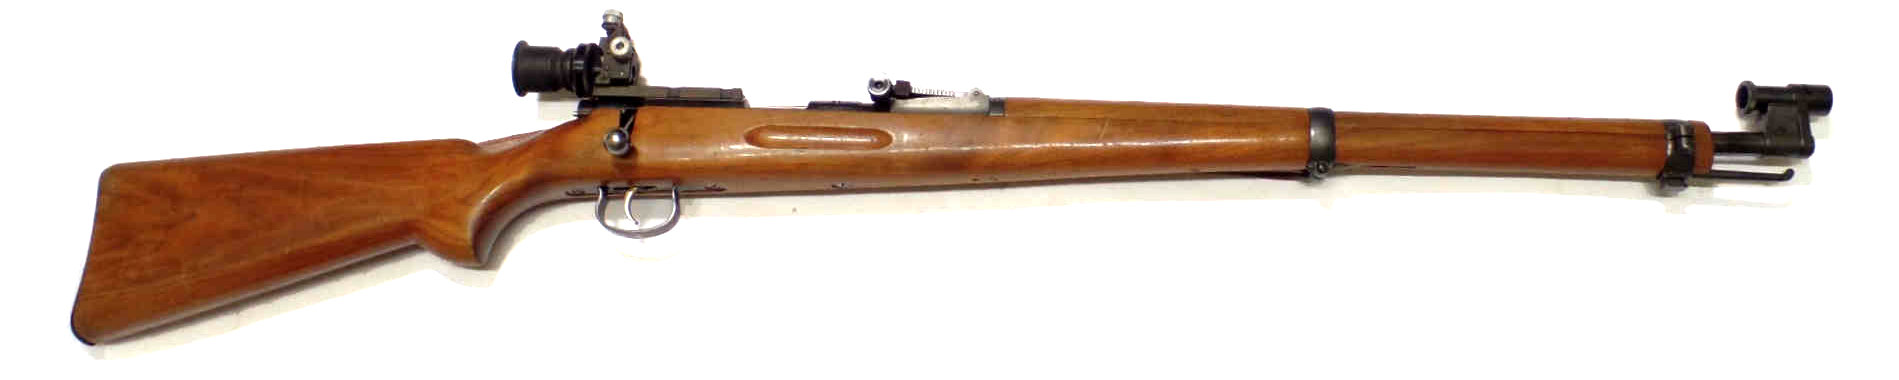 K31 modèle 57 calibre 22LR